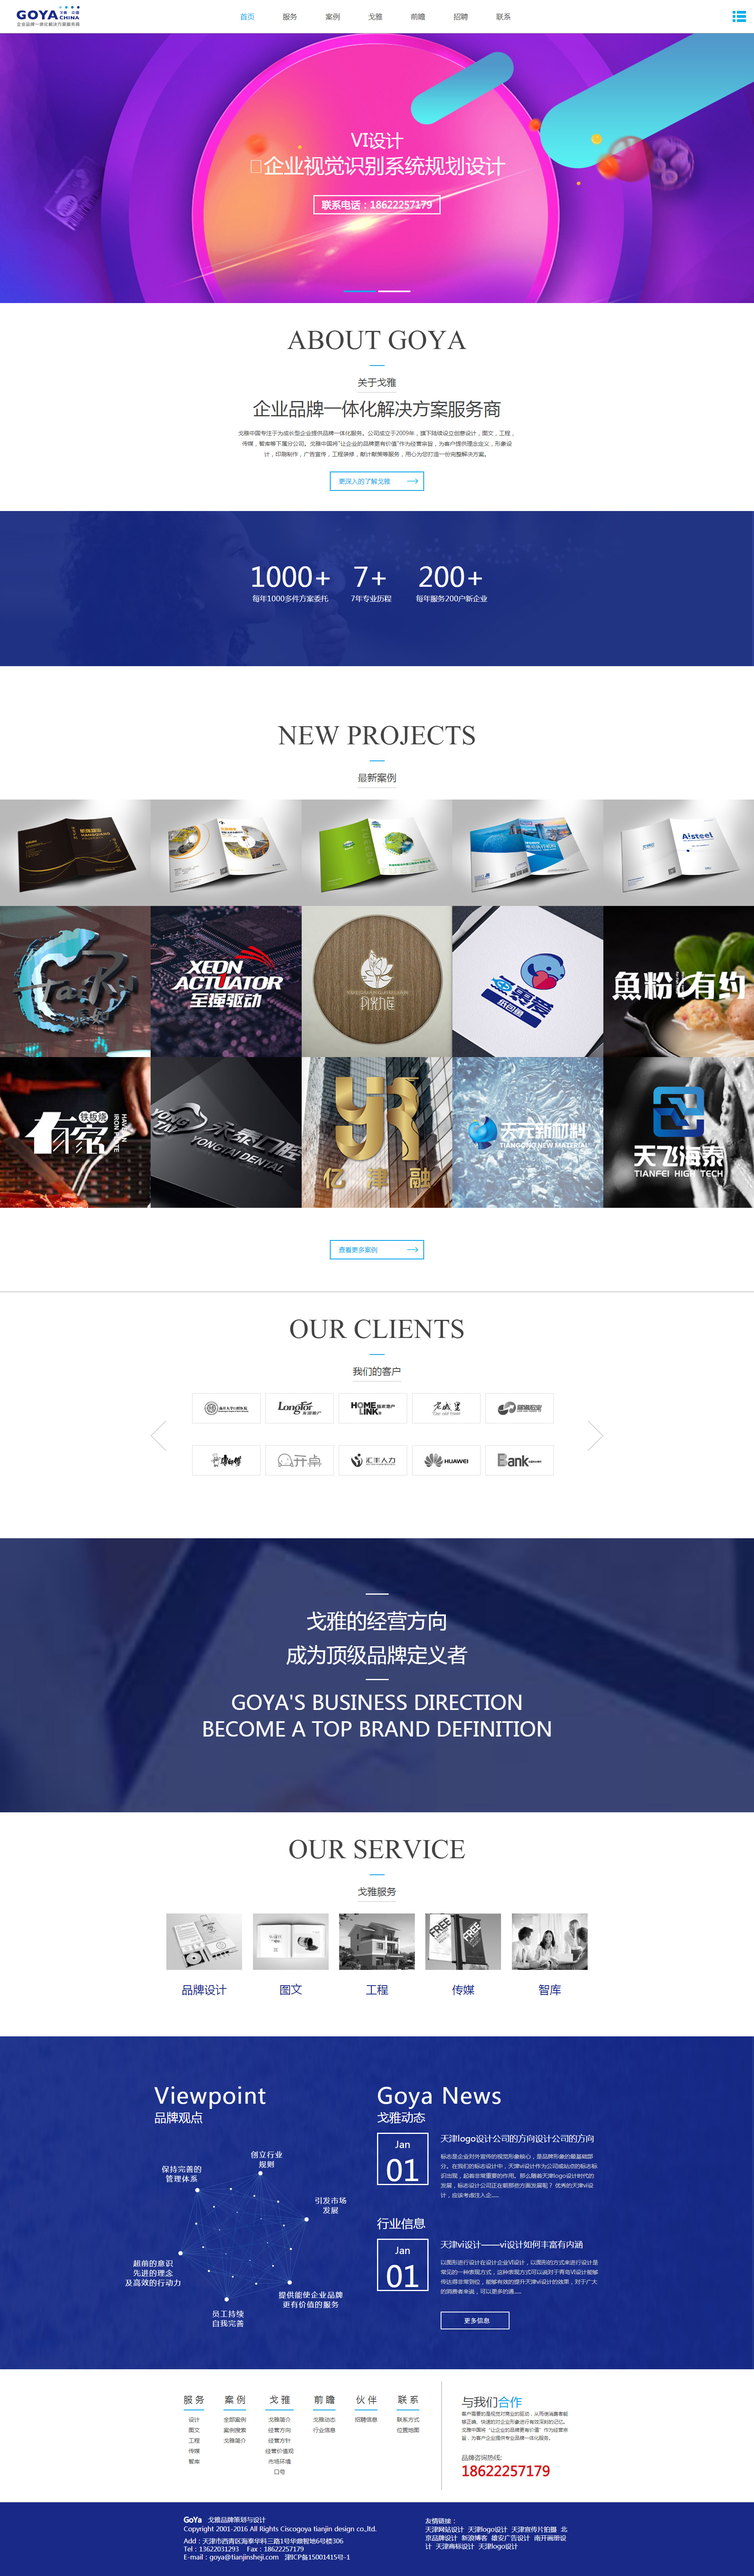 西斯科戈雅企业形象设计网站制作首页设计效果图